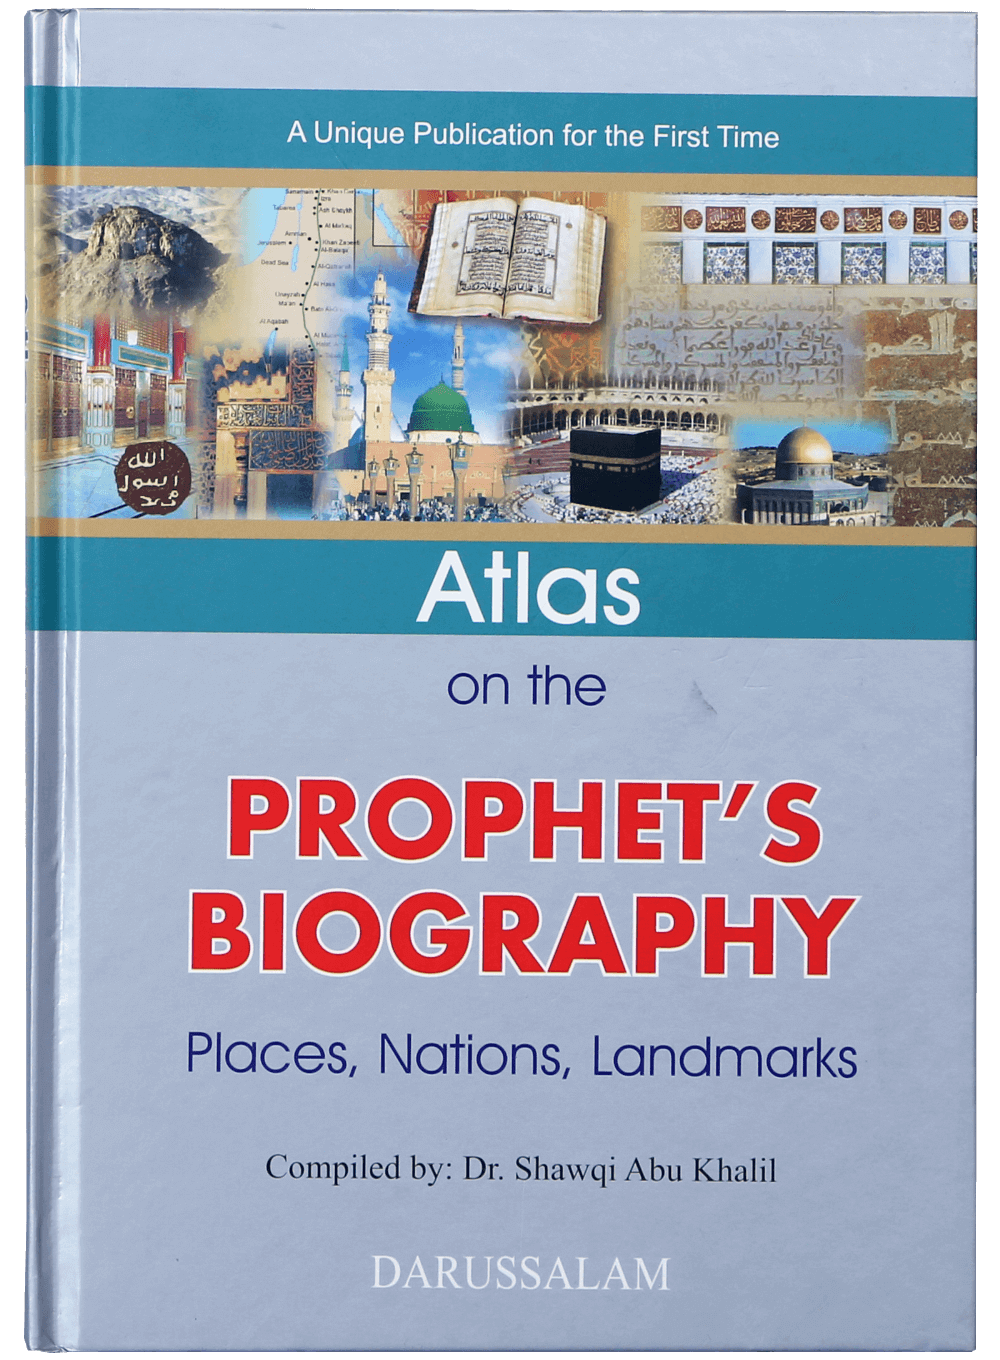 darussalam-2017-10-02-10-35-08atlas-on-the-prophet-biography-(1)